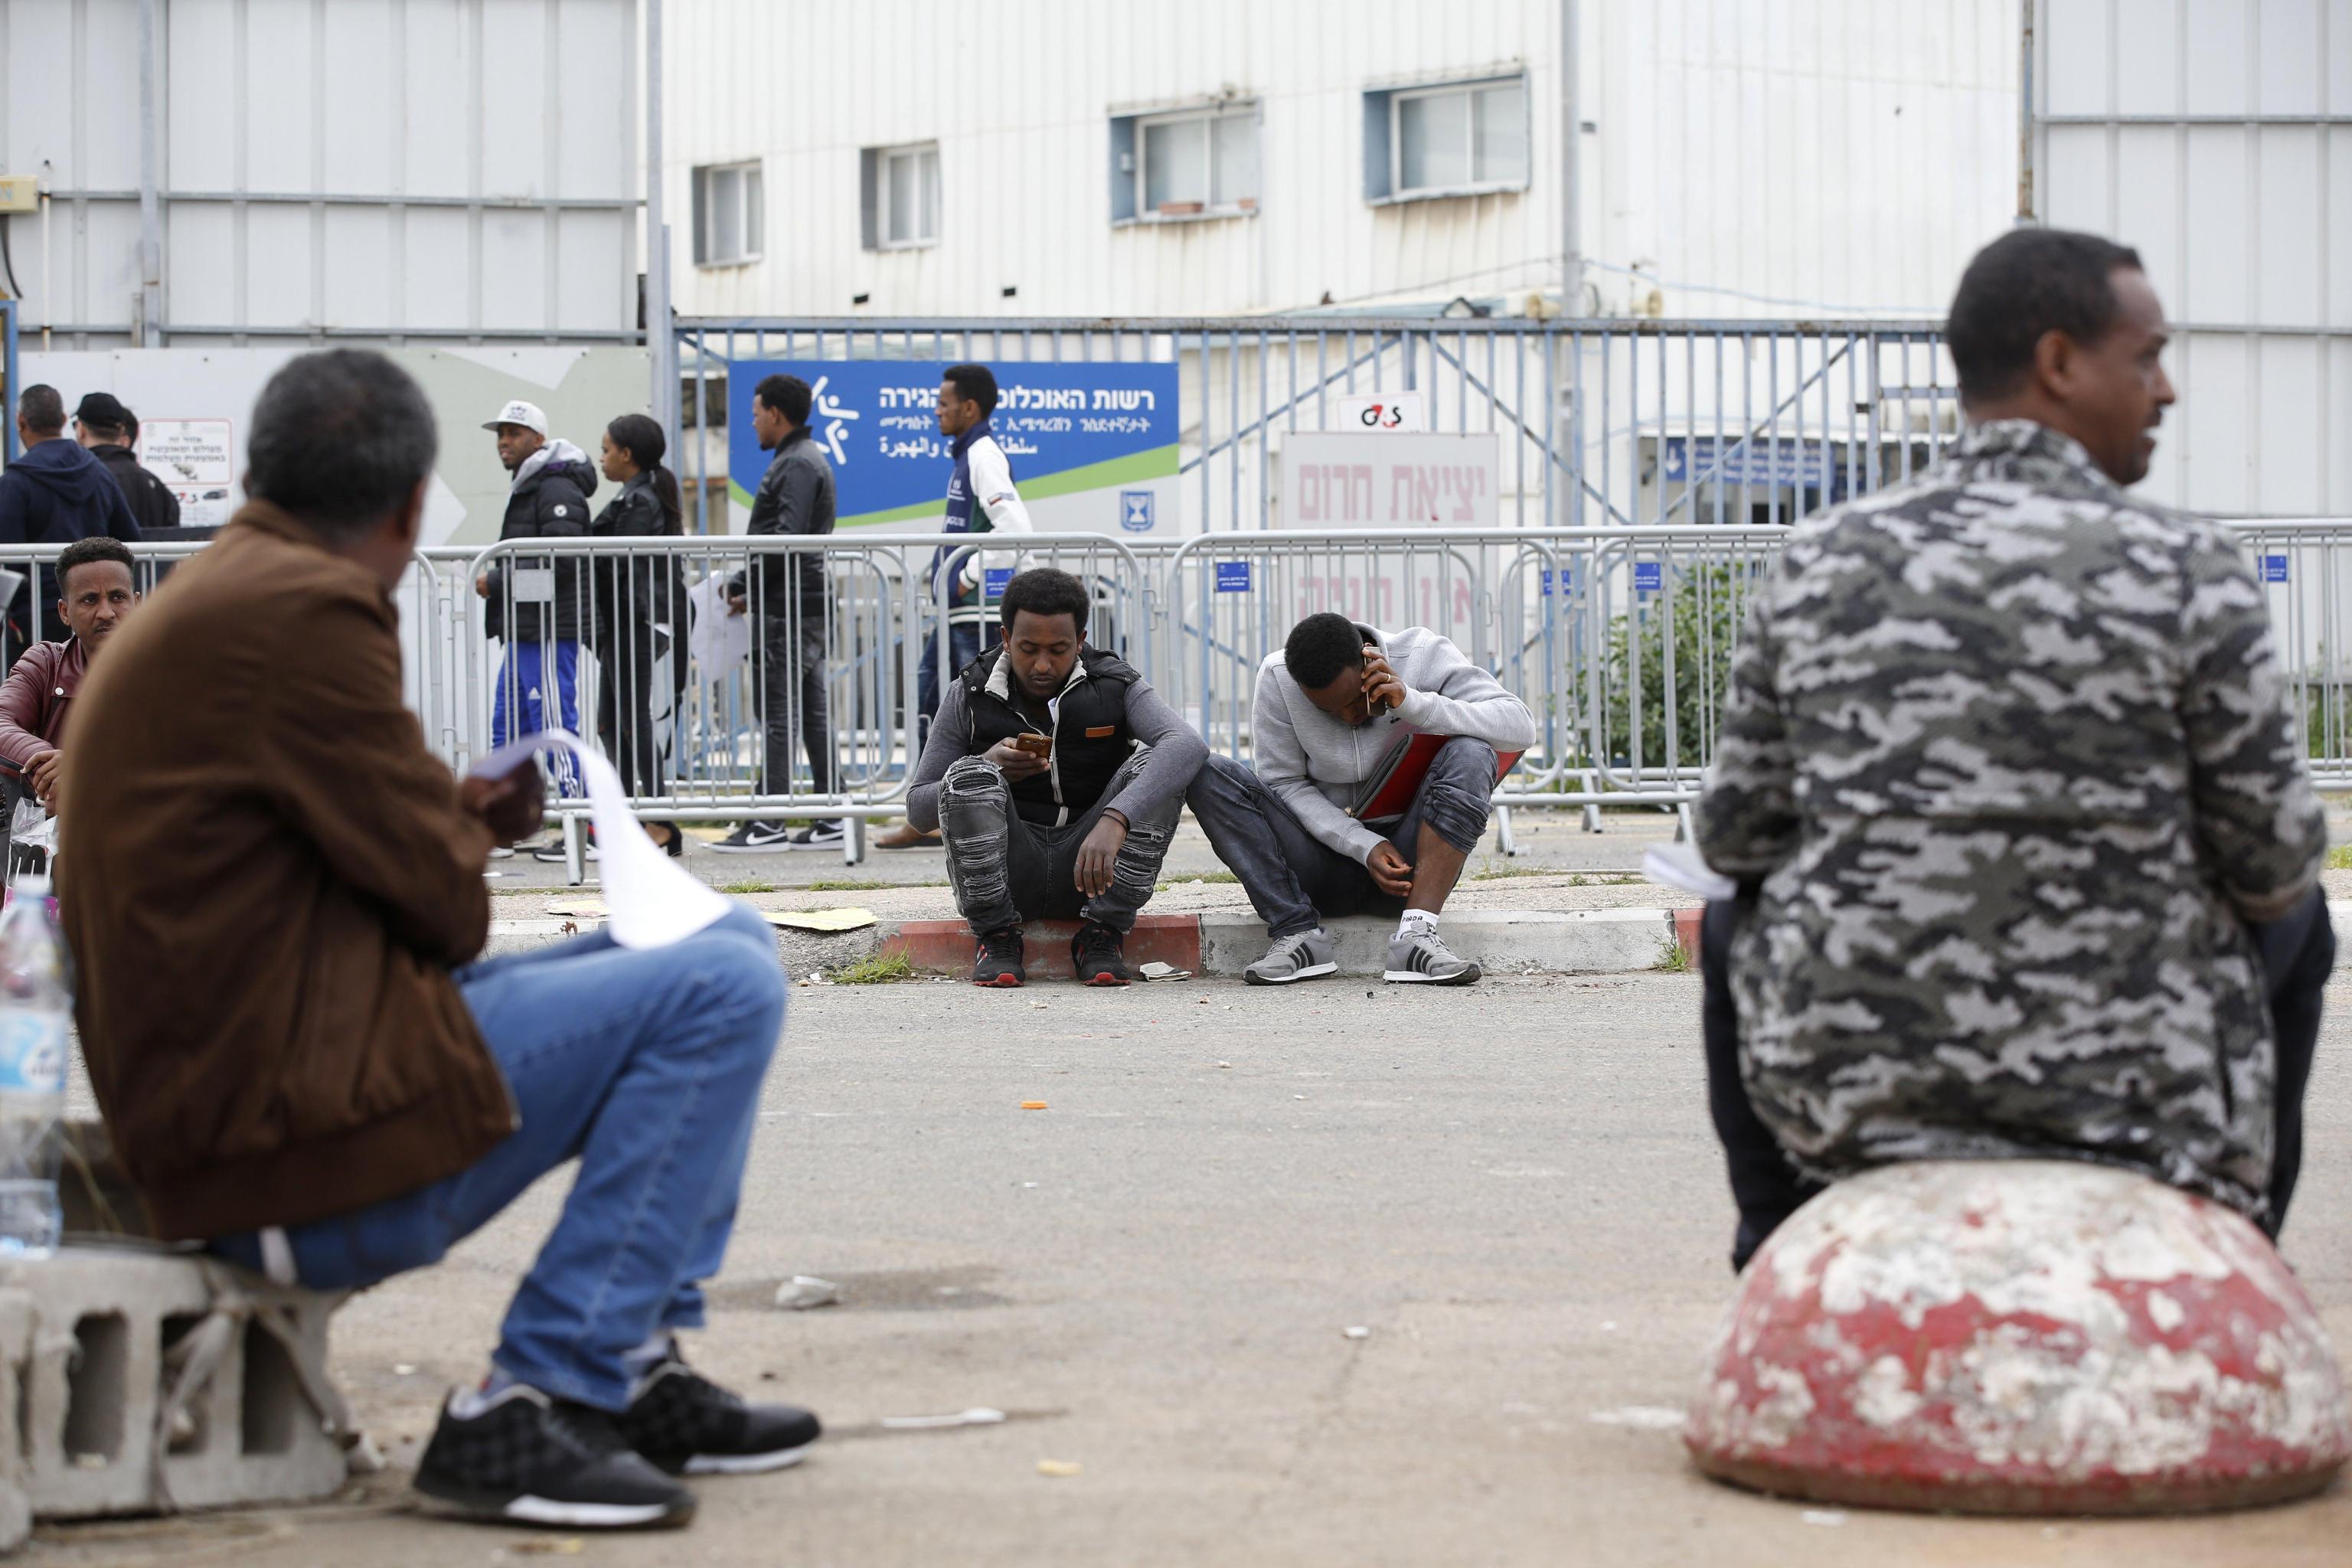 La file dei richiedenti asilo di fronte all'ufficio dell'Autorità israeliana per le frontiere e l'immigrazione che ha sede a Bnei Brak